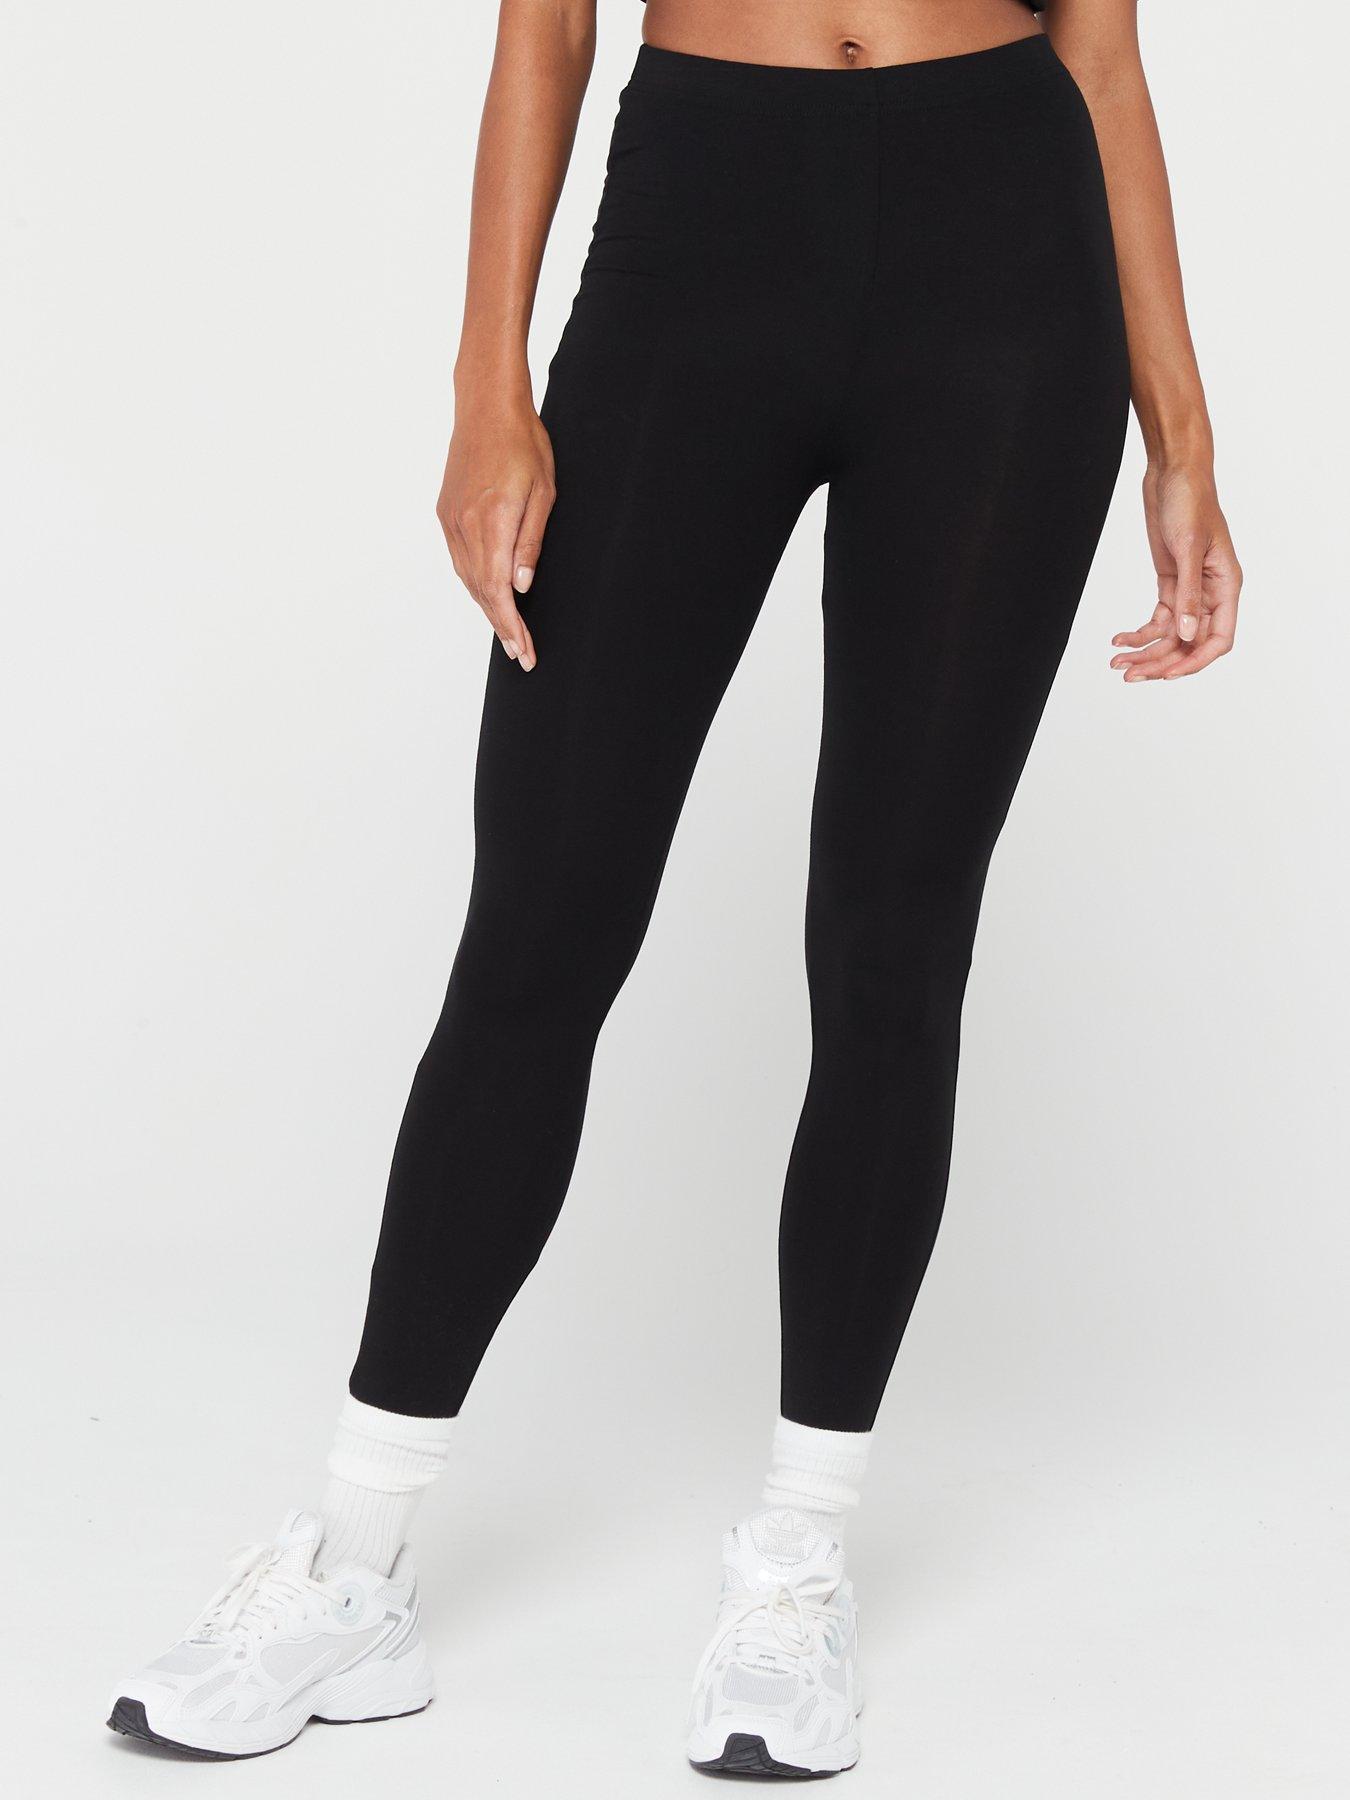 Everyday Kickflare High Waisted Yoga Pants - Black